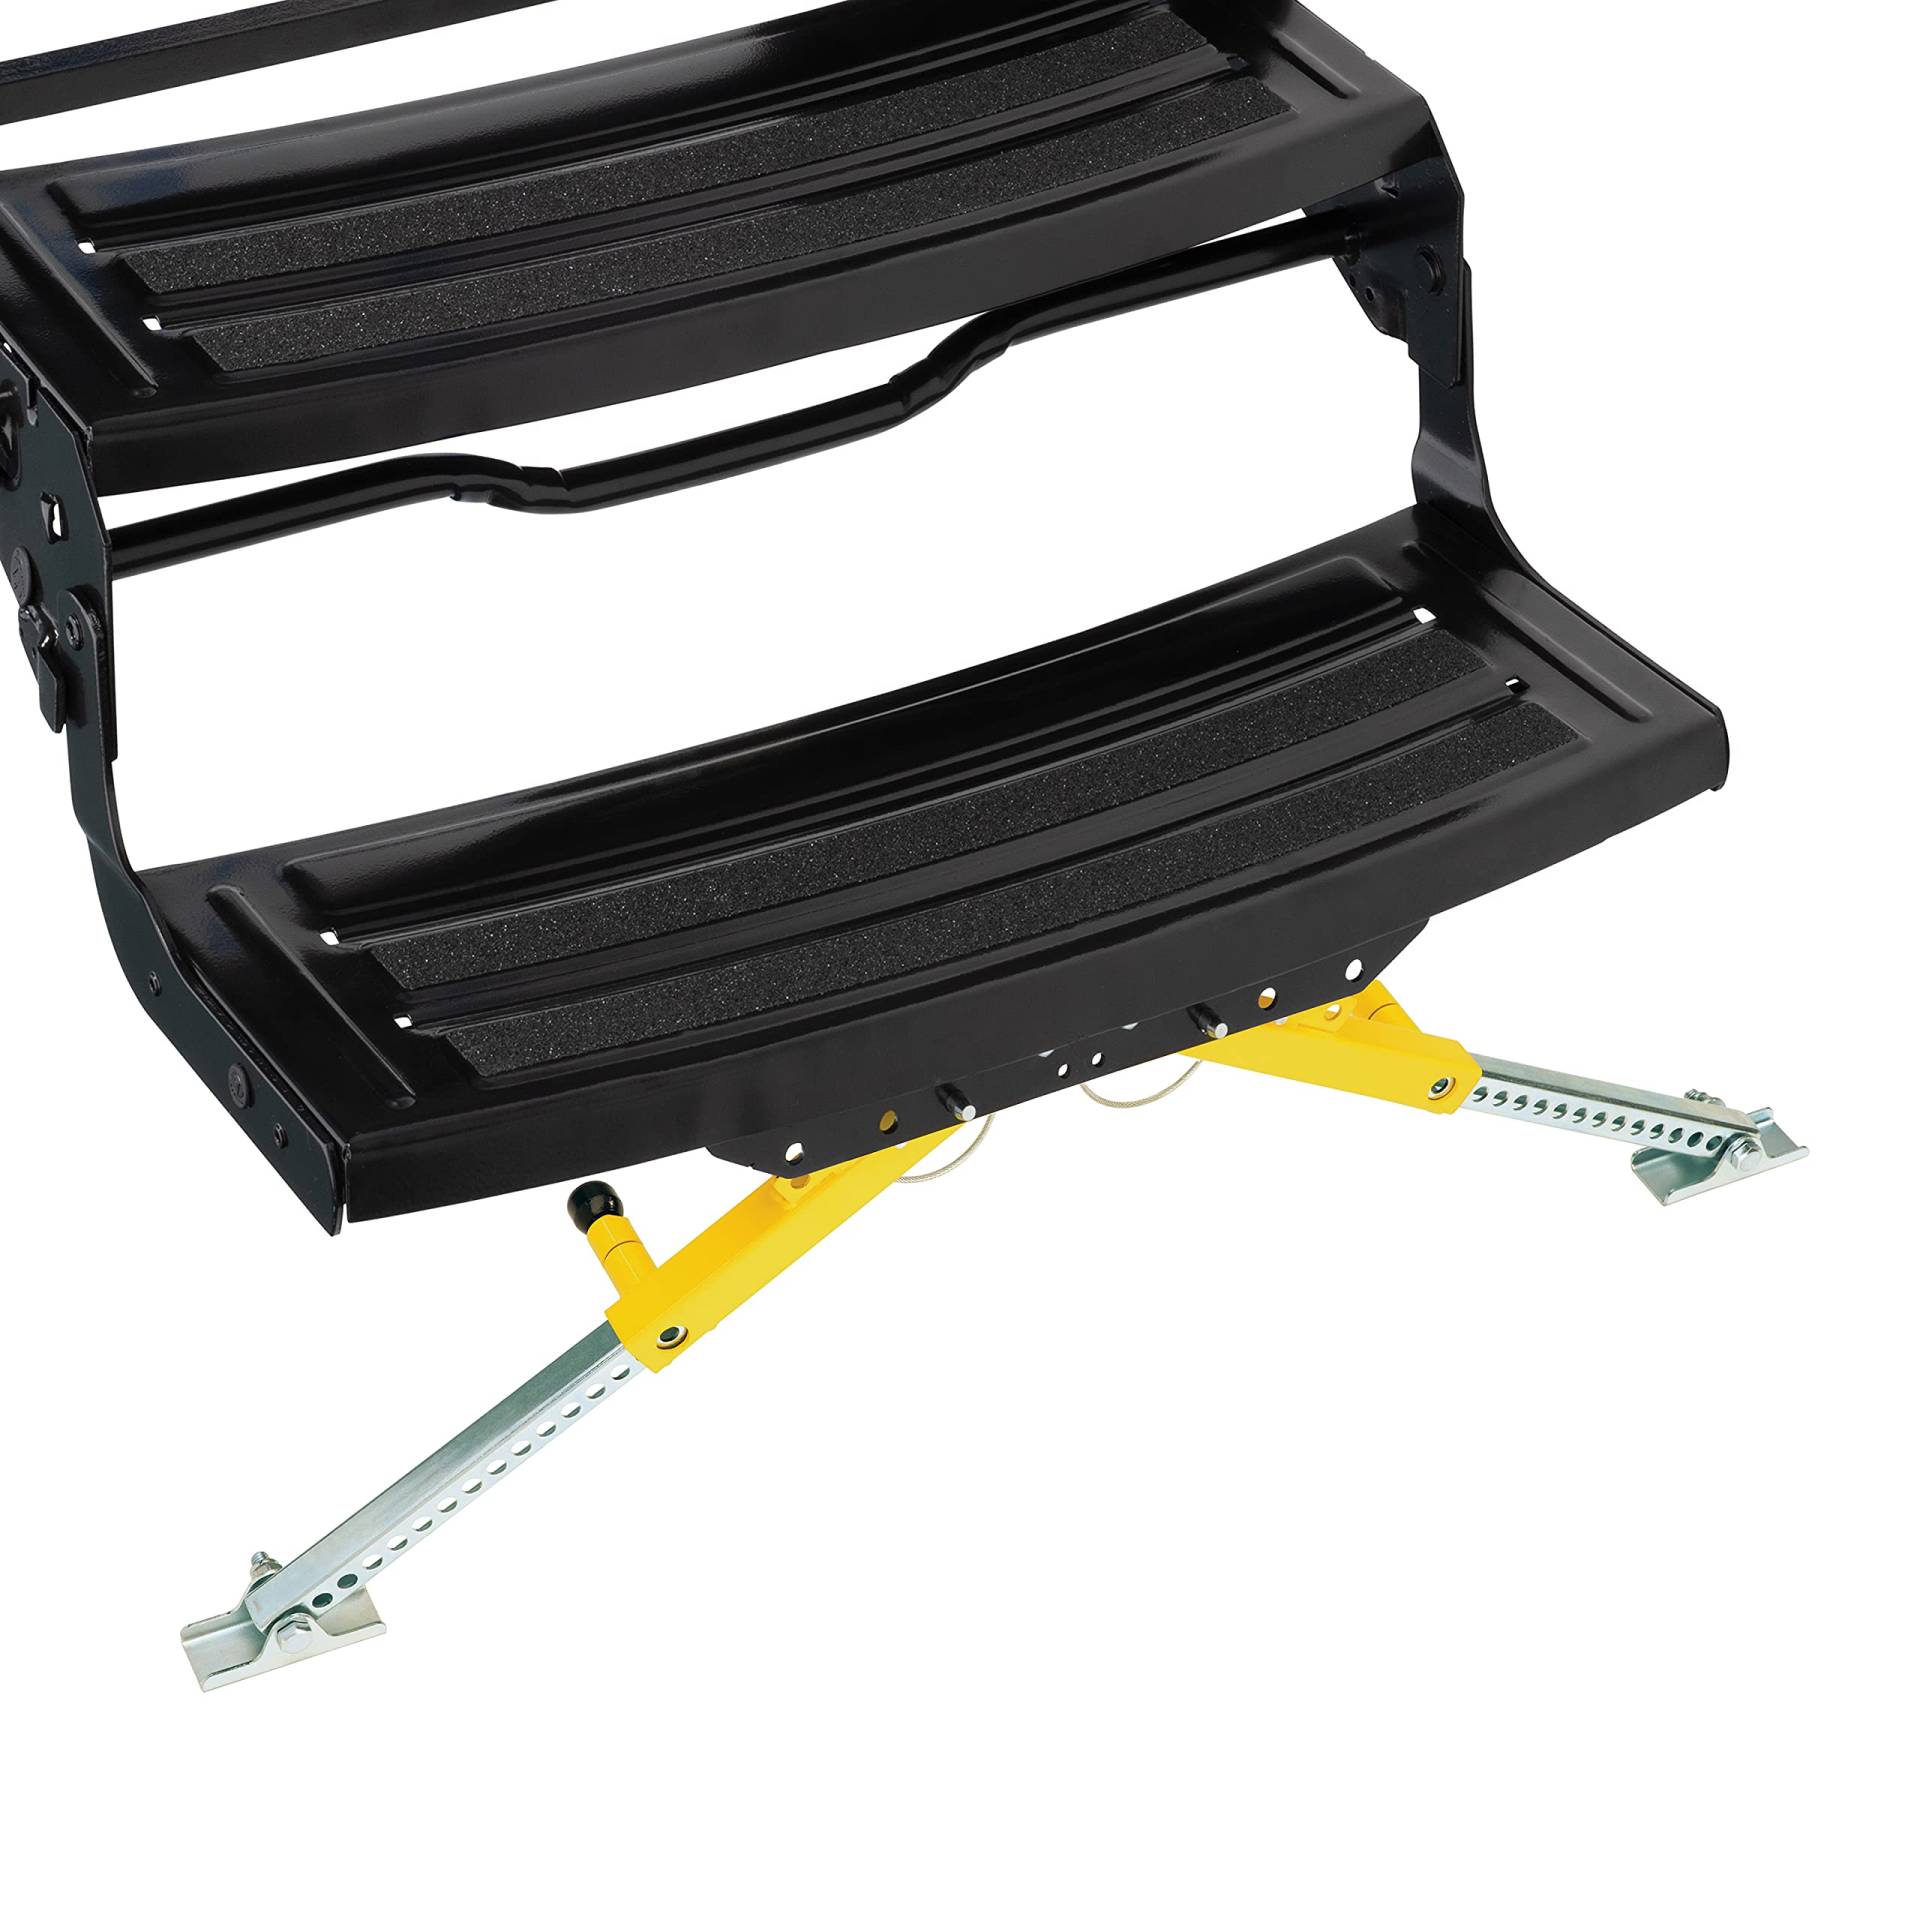 Lippert Solid Stance RV-Trittstabilisator-Set für 5. Räder, Reiseanhänger und Wohnmobile von Lippert Components